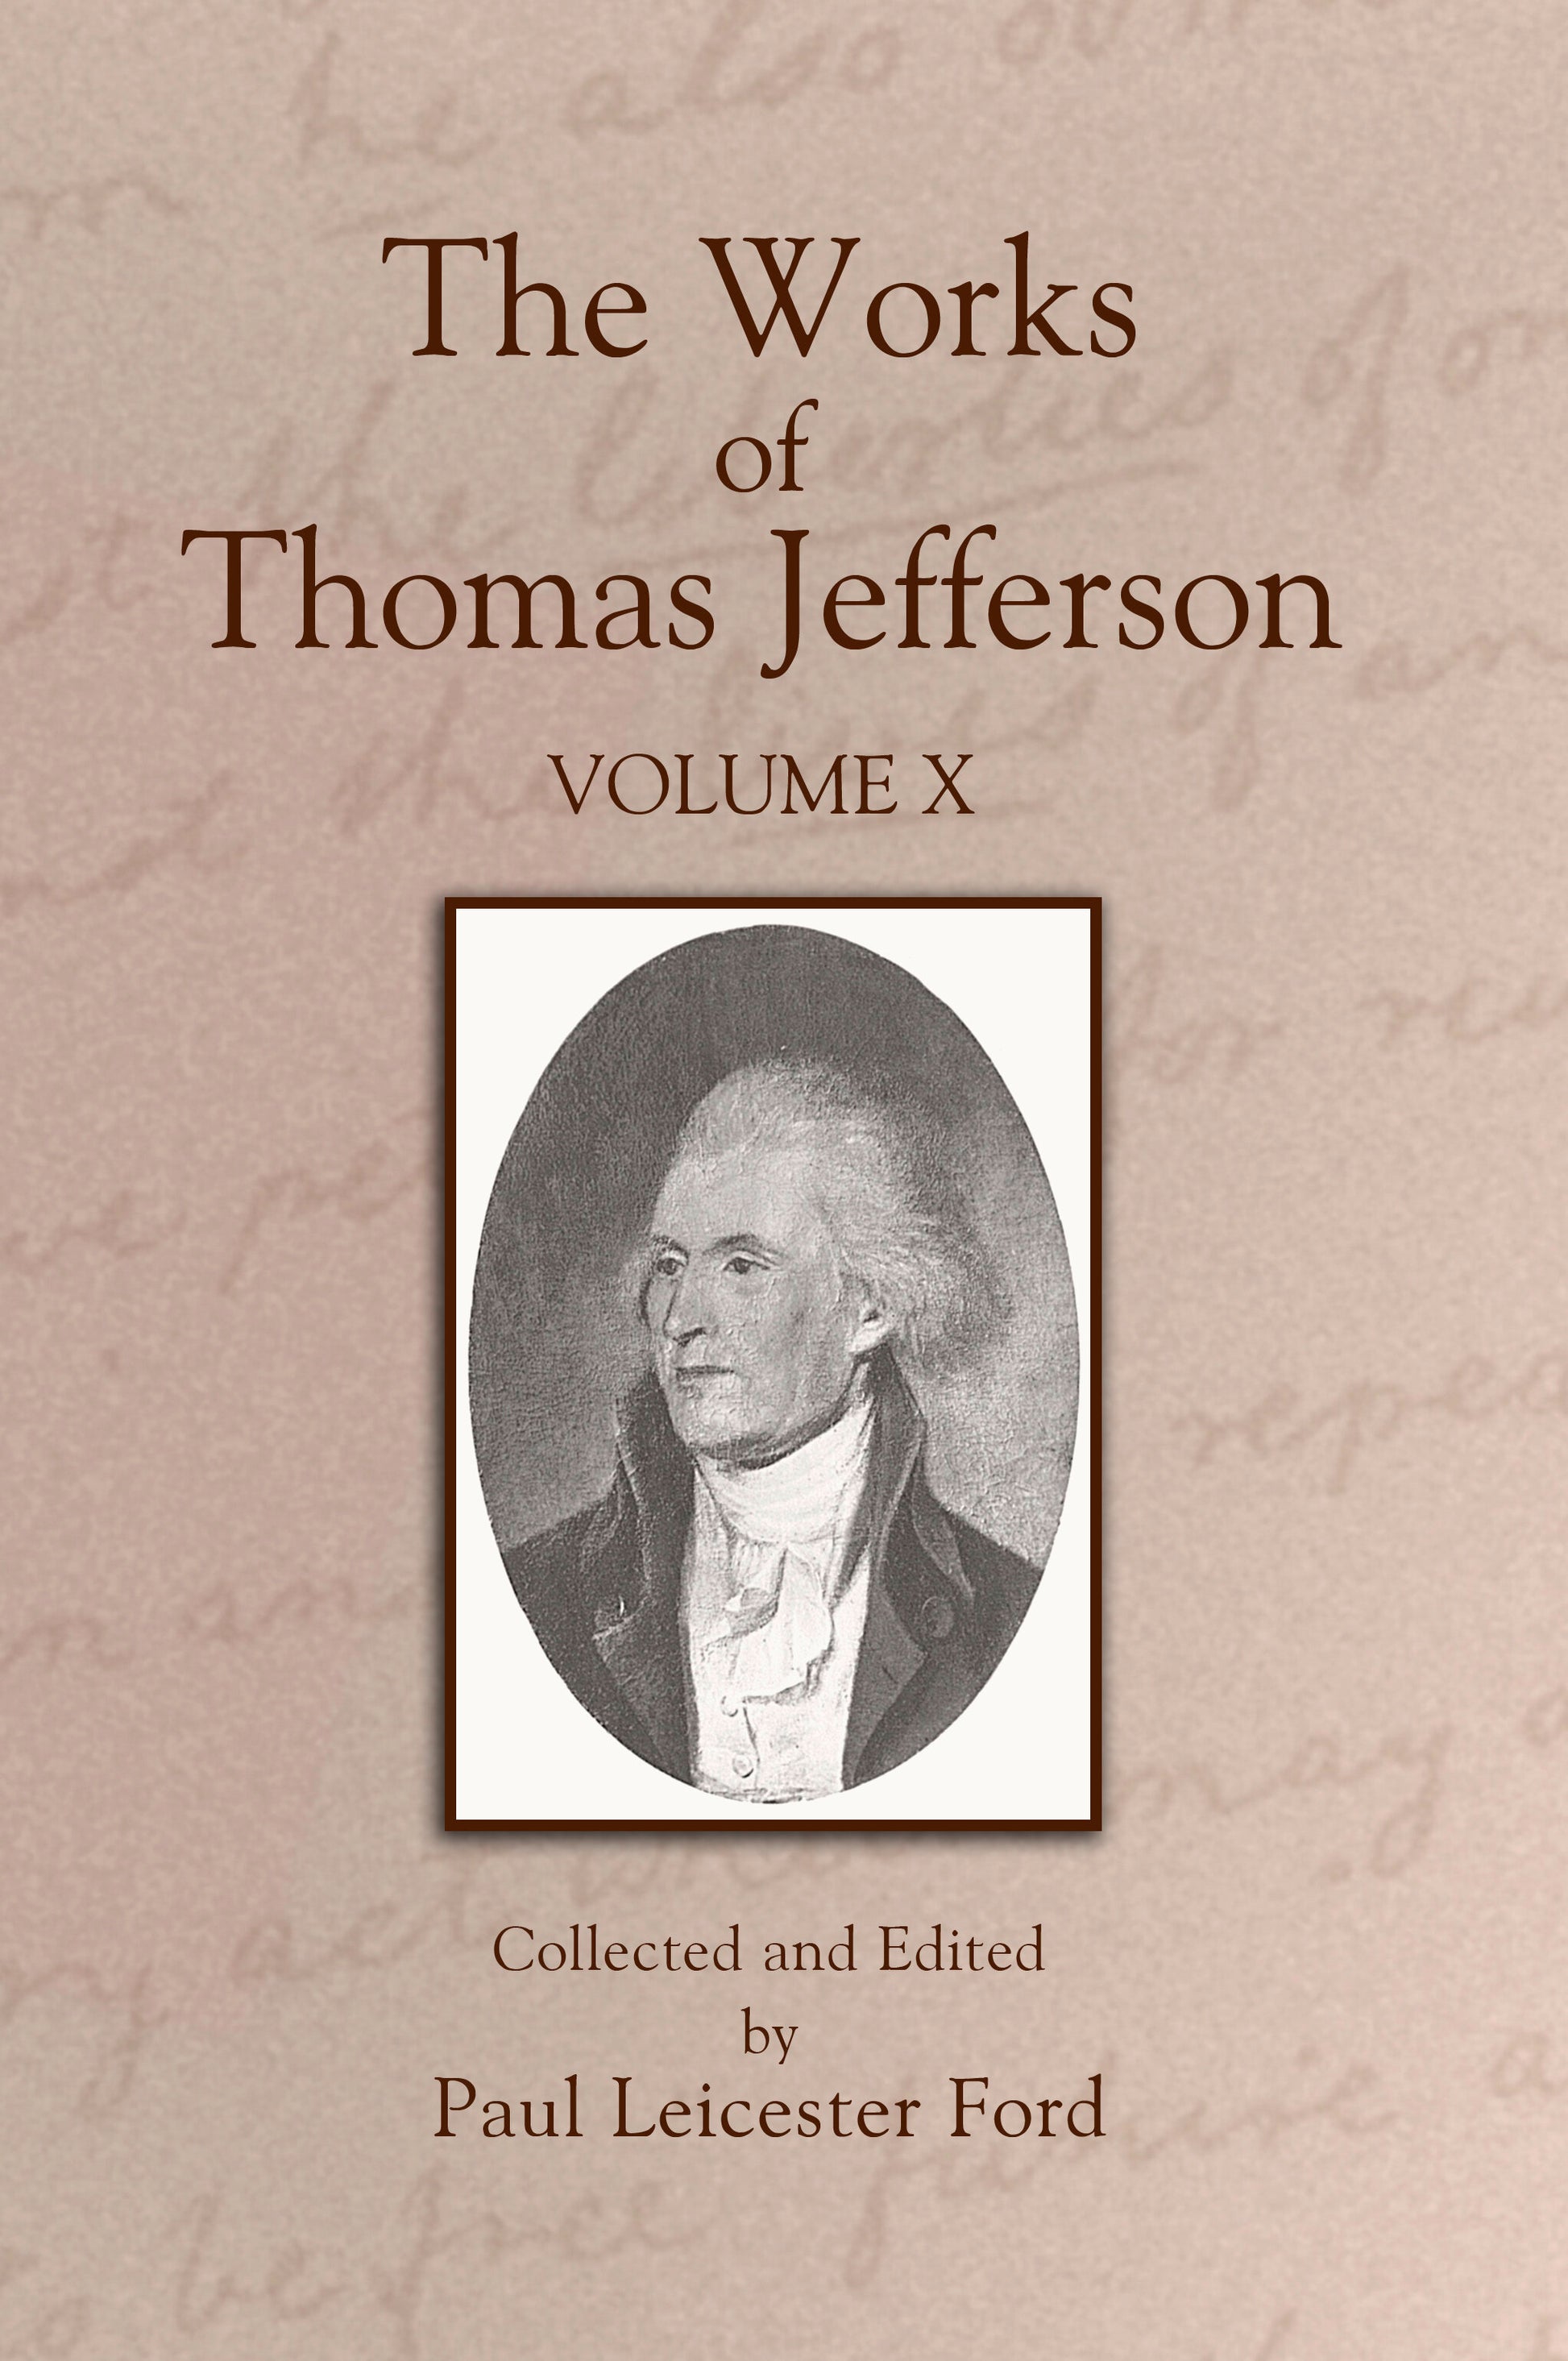 The Works of Thomas Jefferson: Volume X